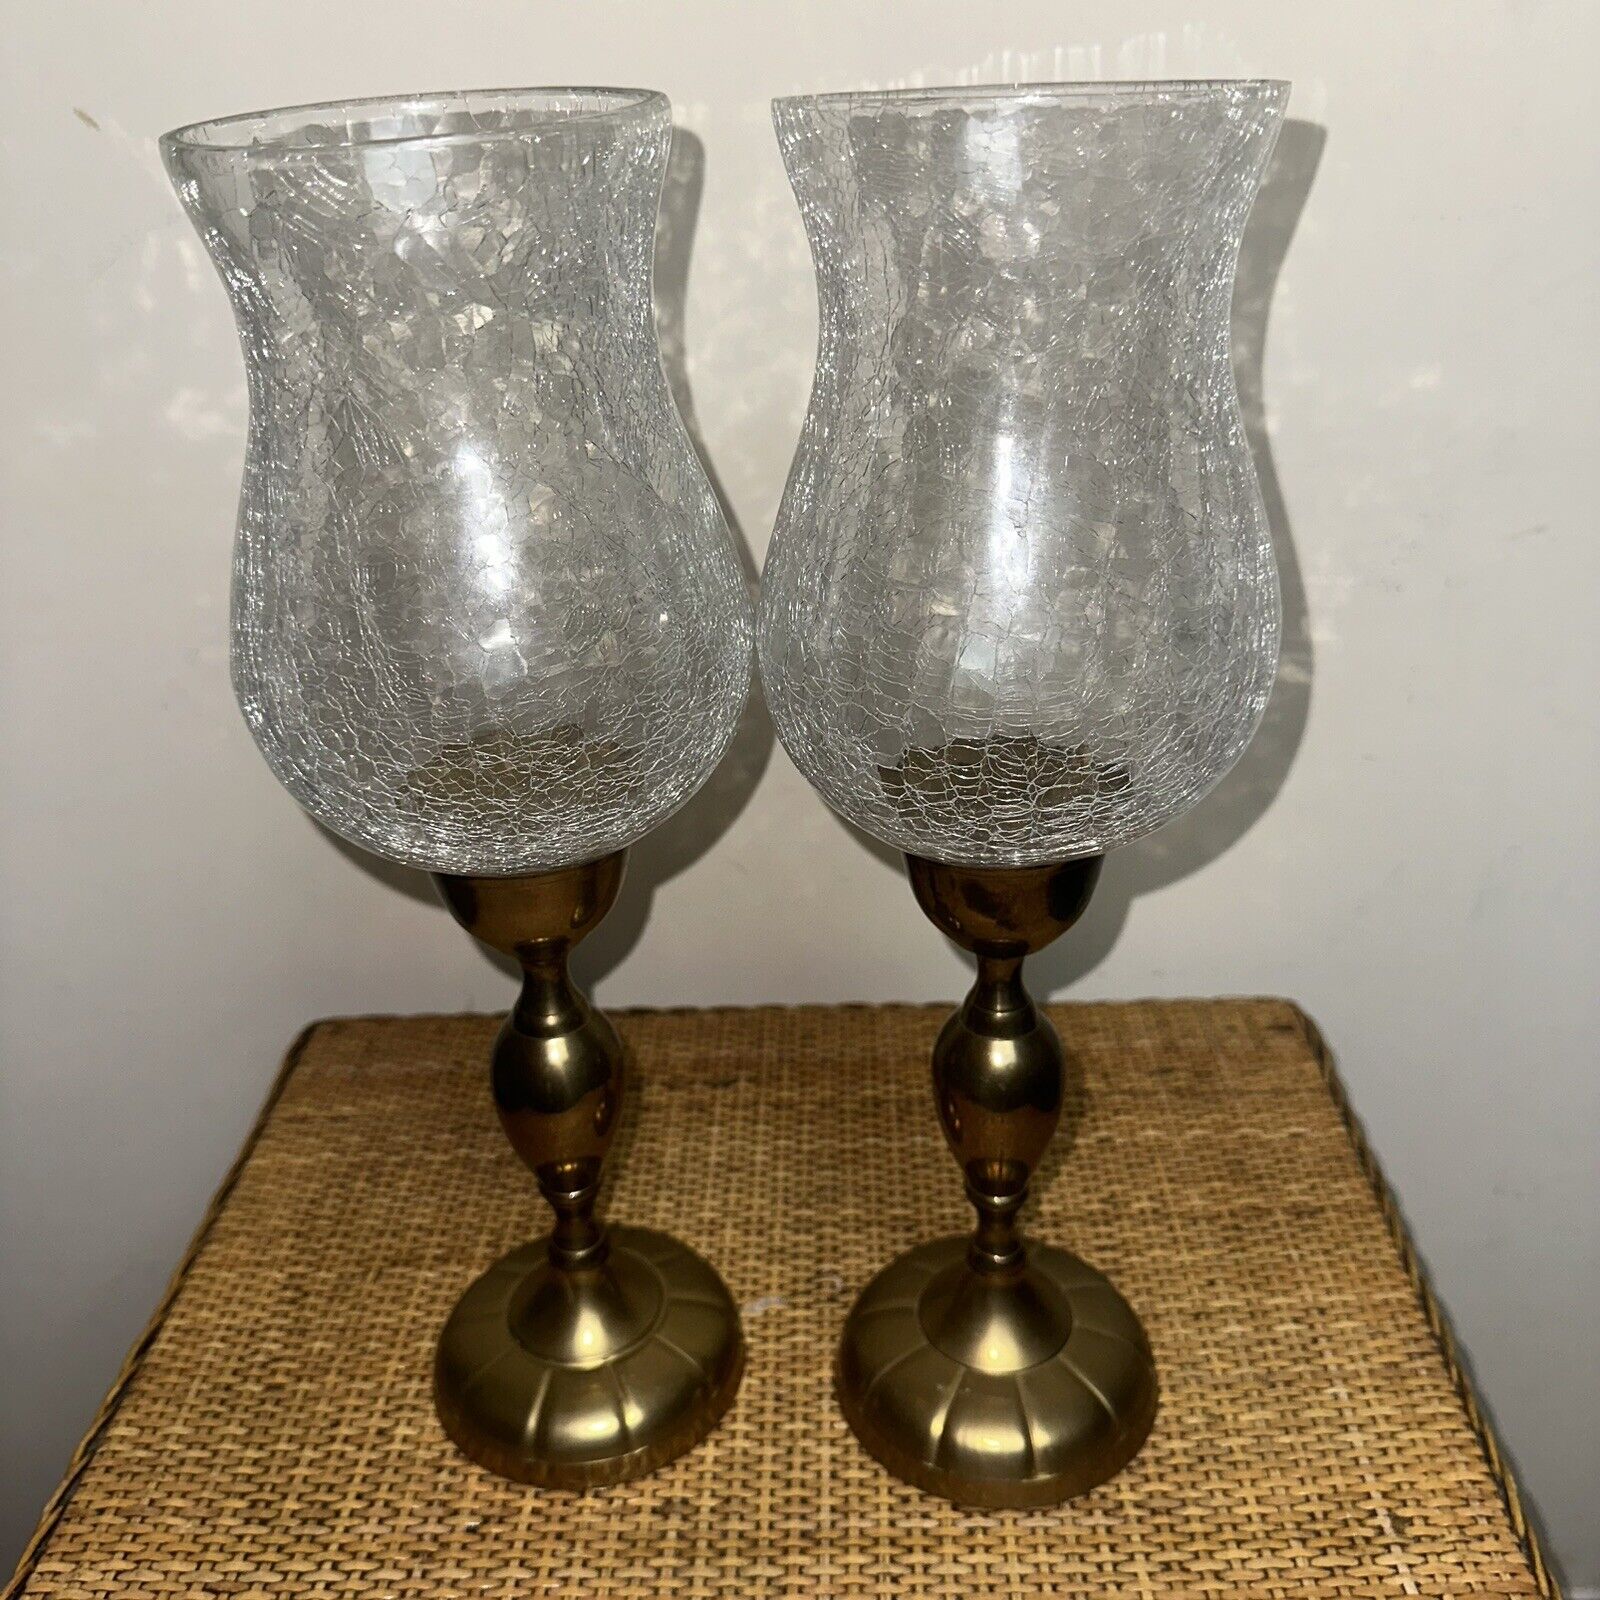 Vintage 22.5” Brass Candlestick Crackled Glass Shade Set Of 2 Decor Retro Boho